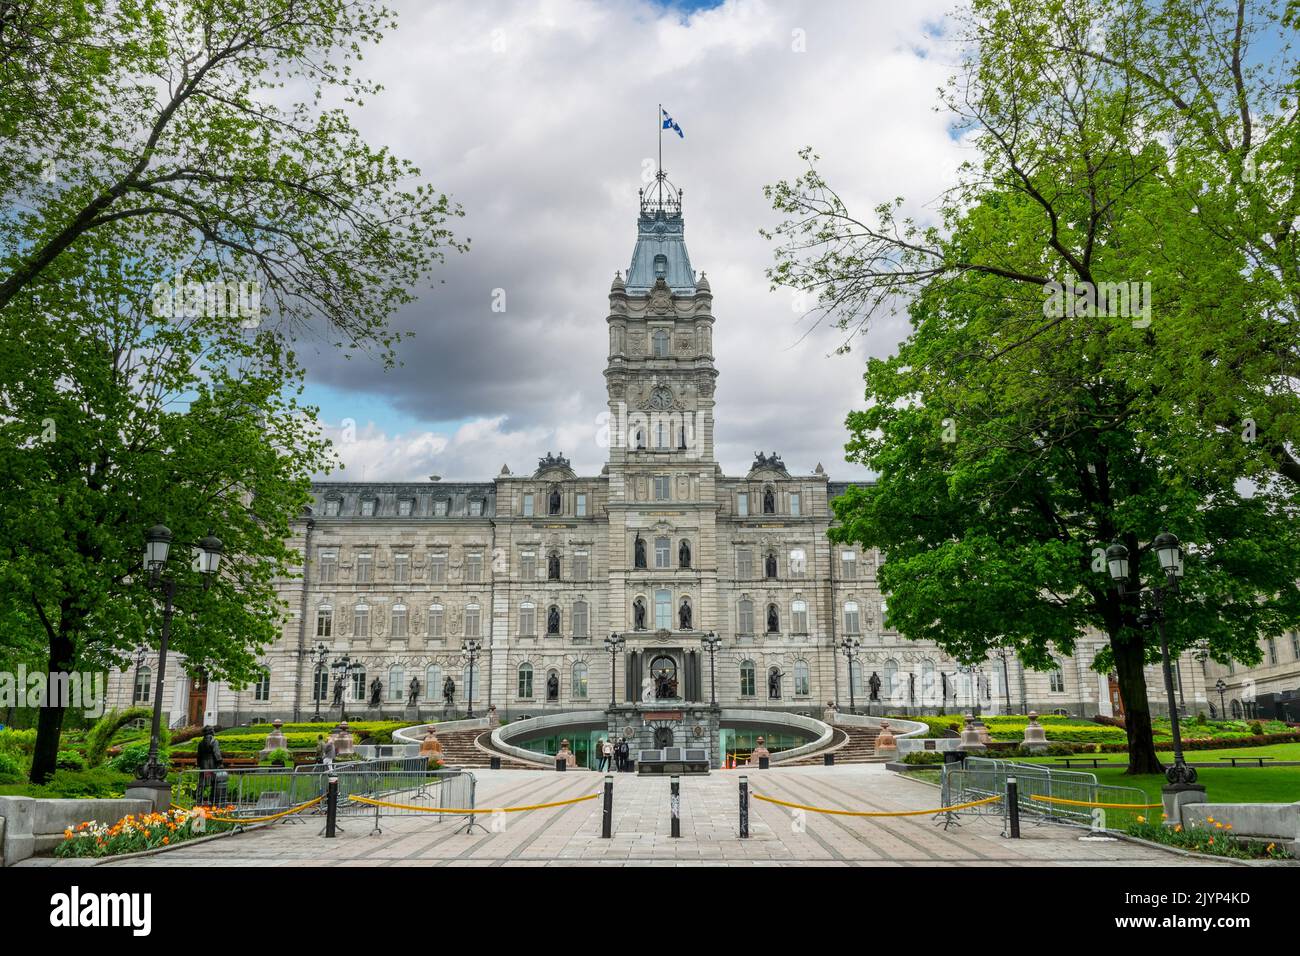 Quebec parliament in Quebec City, Canada Stock Photo